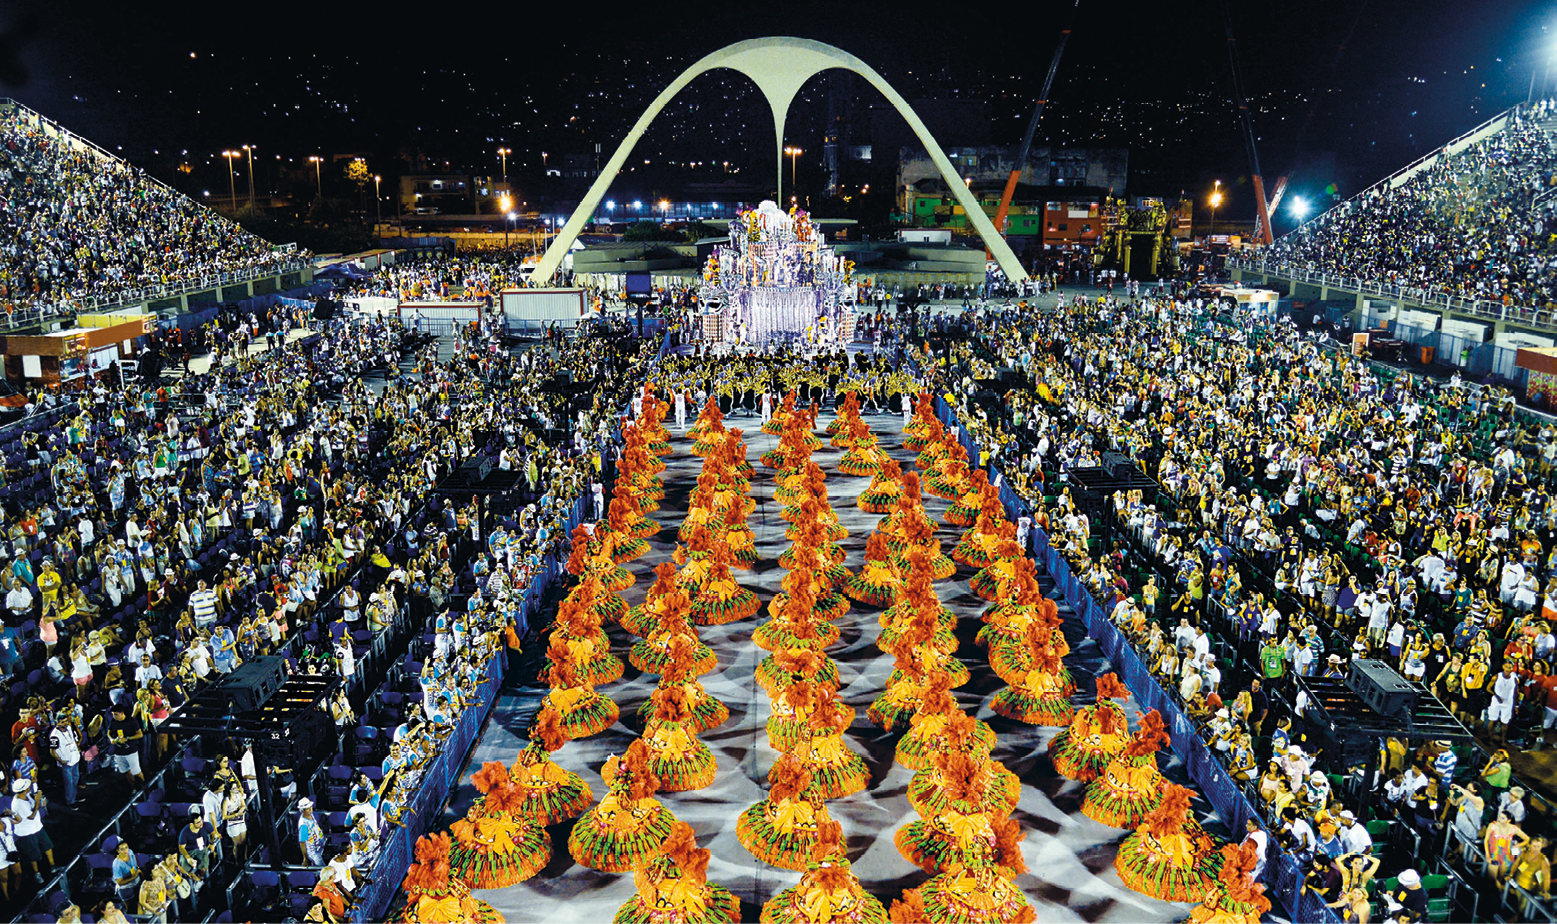 Fotografia. Vista de cima de um desfile de escola de samba. No centro da passarela, há mulheres vestidas de baianas, com roupas em tons de laranja e dourado. À esquerda e à direita, o público acompanha o desfile nas arquibancadas. Ao fundo, a praça da Apoteose com o arco de concreto.